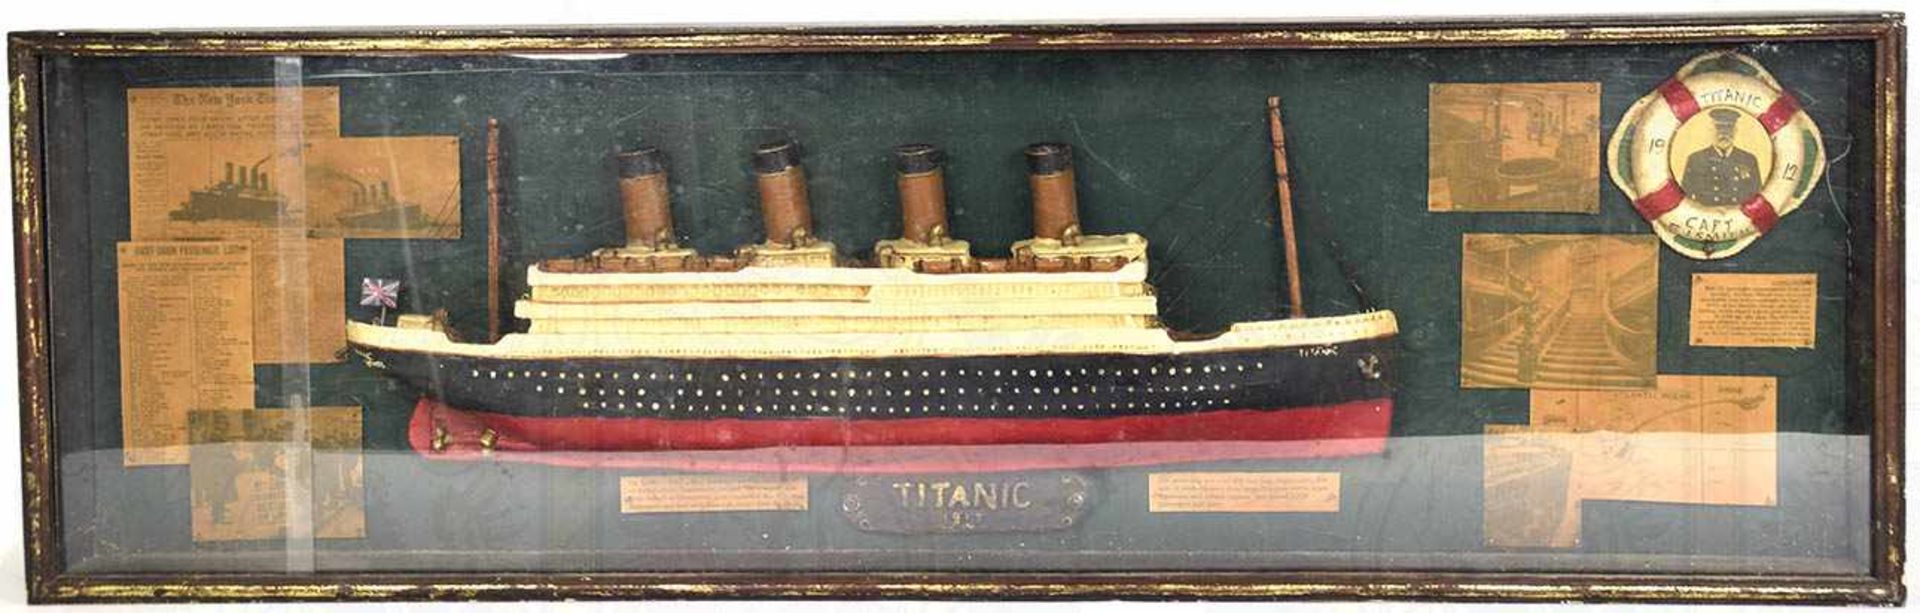 SCHAUKASTEN RMS TITANIC, stark vereinfachtes Modell des Schiffes, L. 62 cm, farbig bemalte Masse,